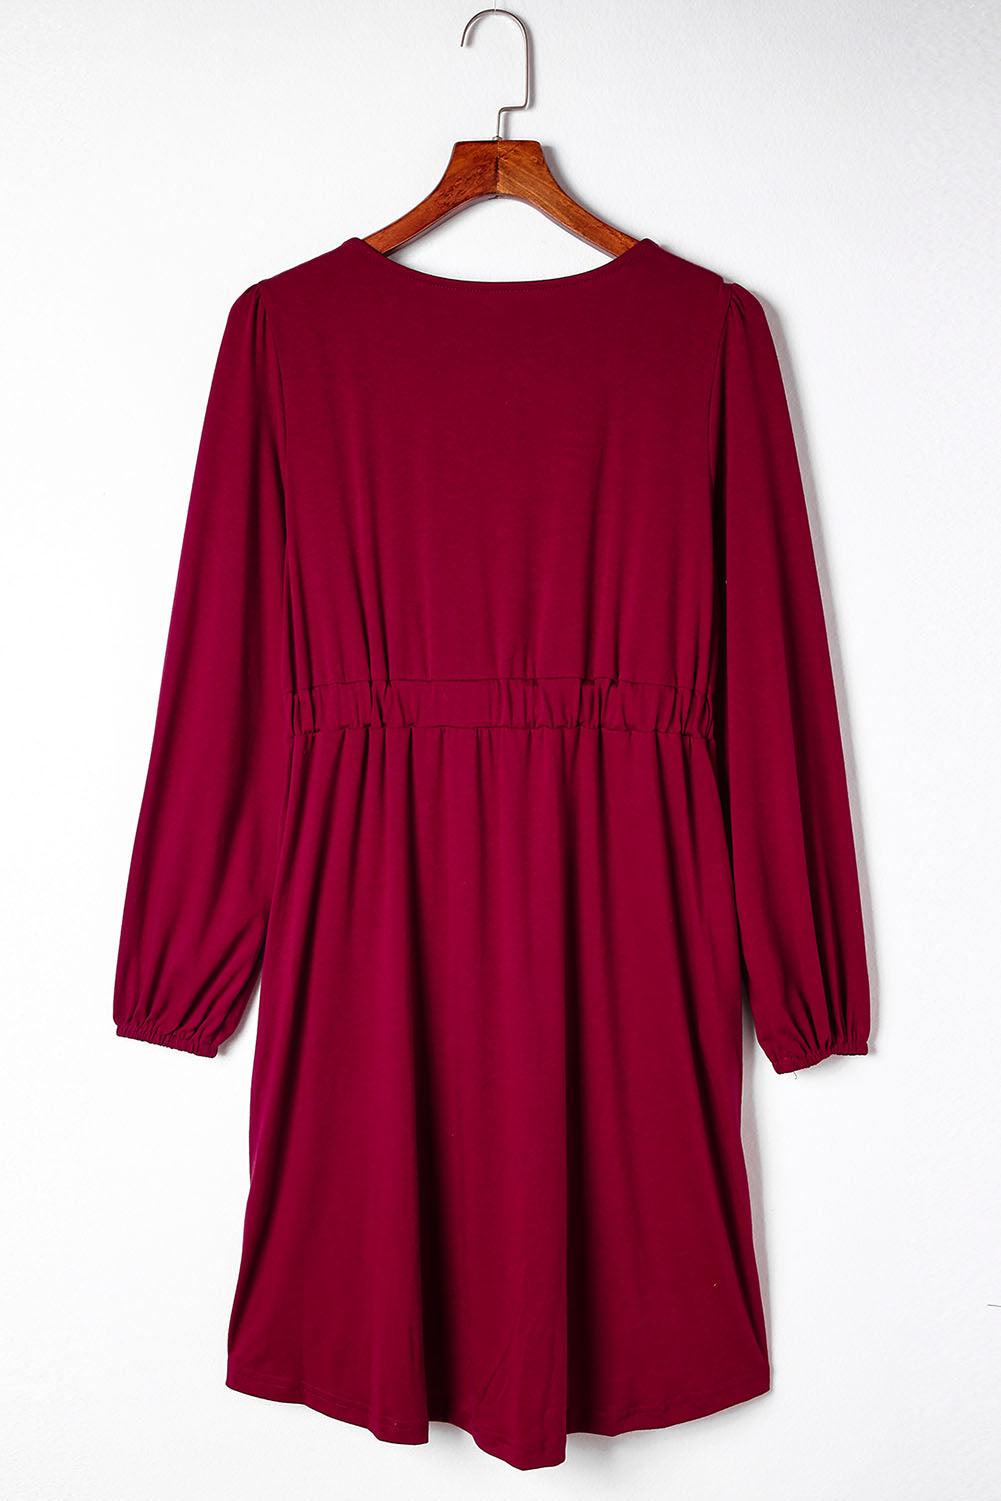 Robe rouge vif boutonnée à manches longues et taille haute